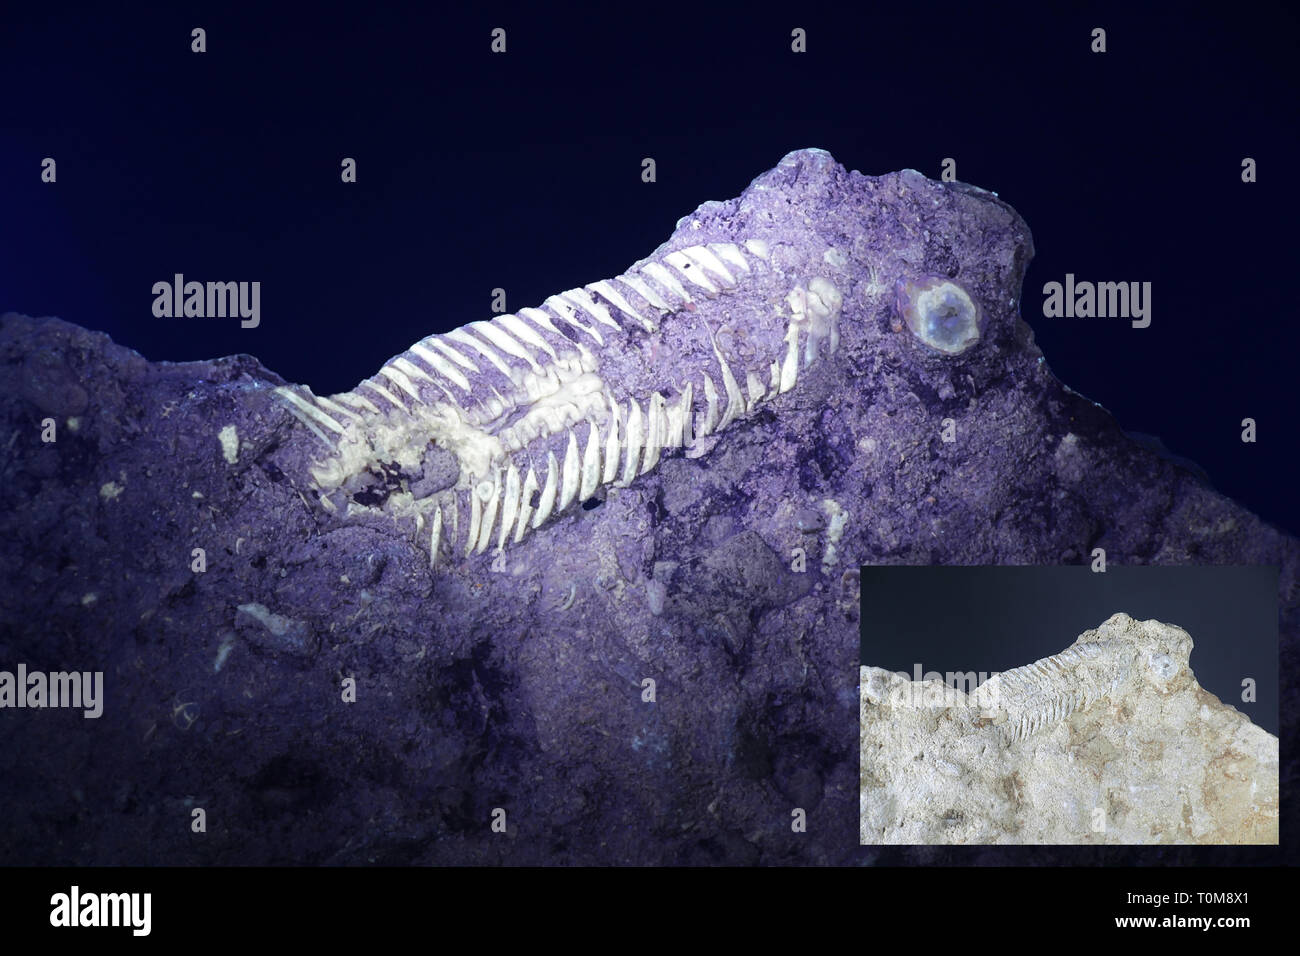 Silurian trilobata da fossili Saarenmaa, Estonia, fotografato a luce ultravioletta (365 nm). Immagine di piccole dimensioni che mostra lo stesso campione in normale luce diurna. Foto Stock